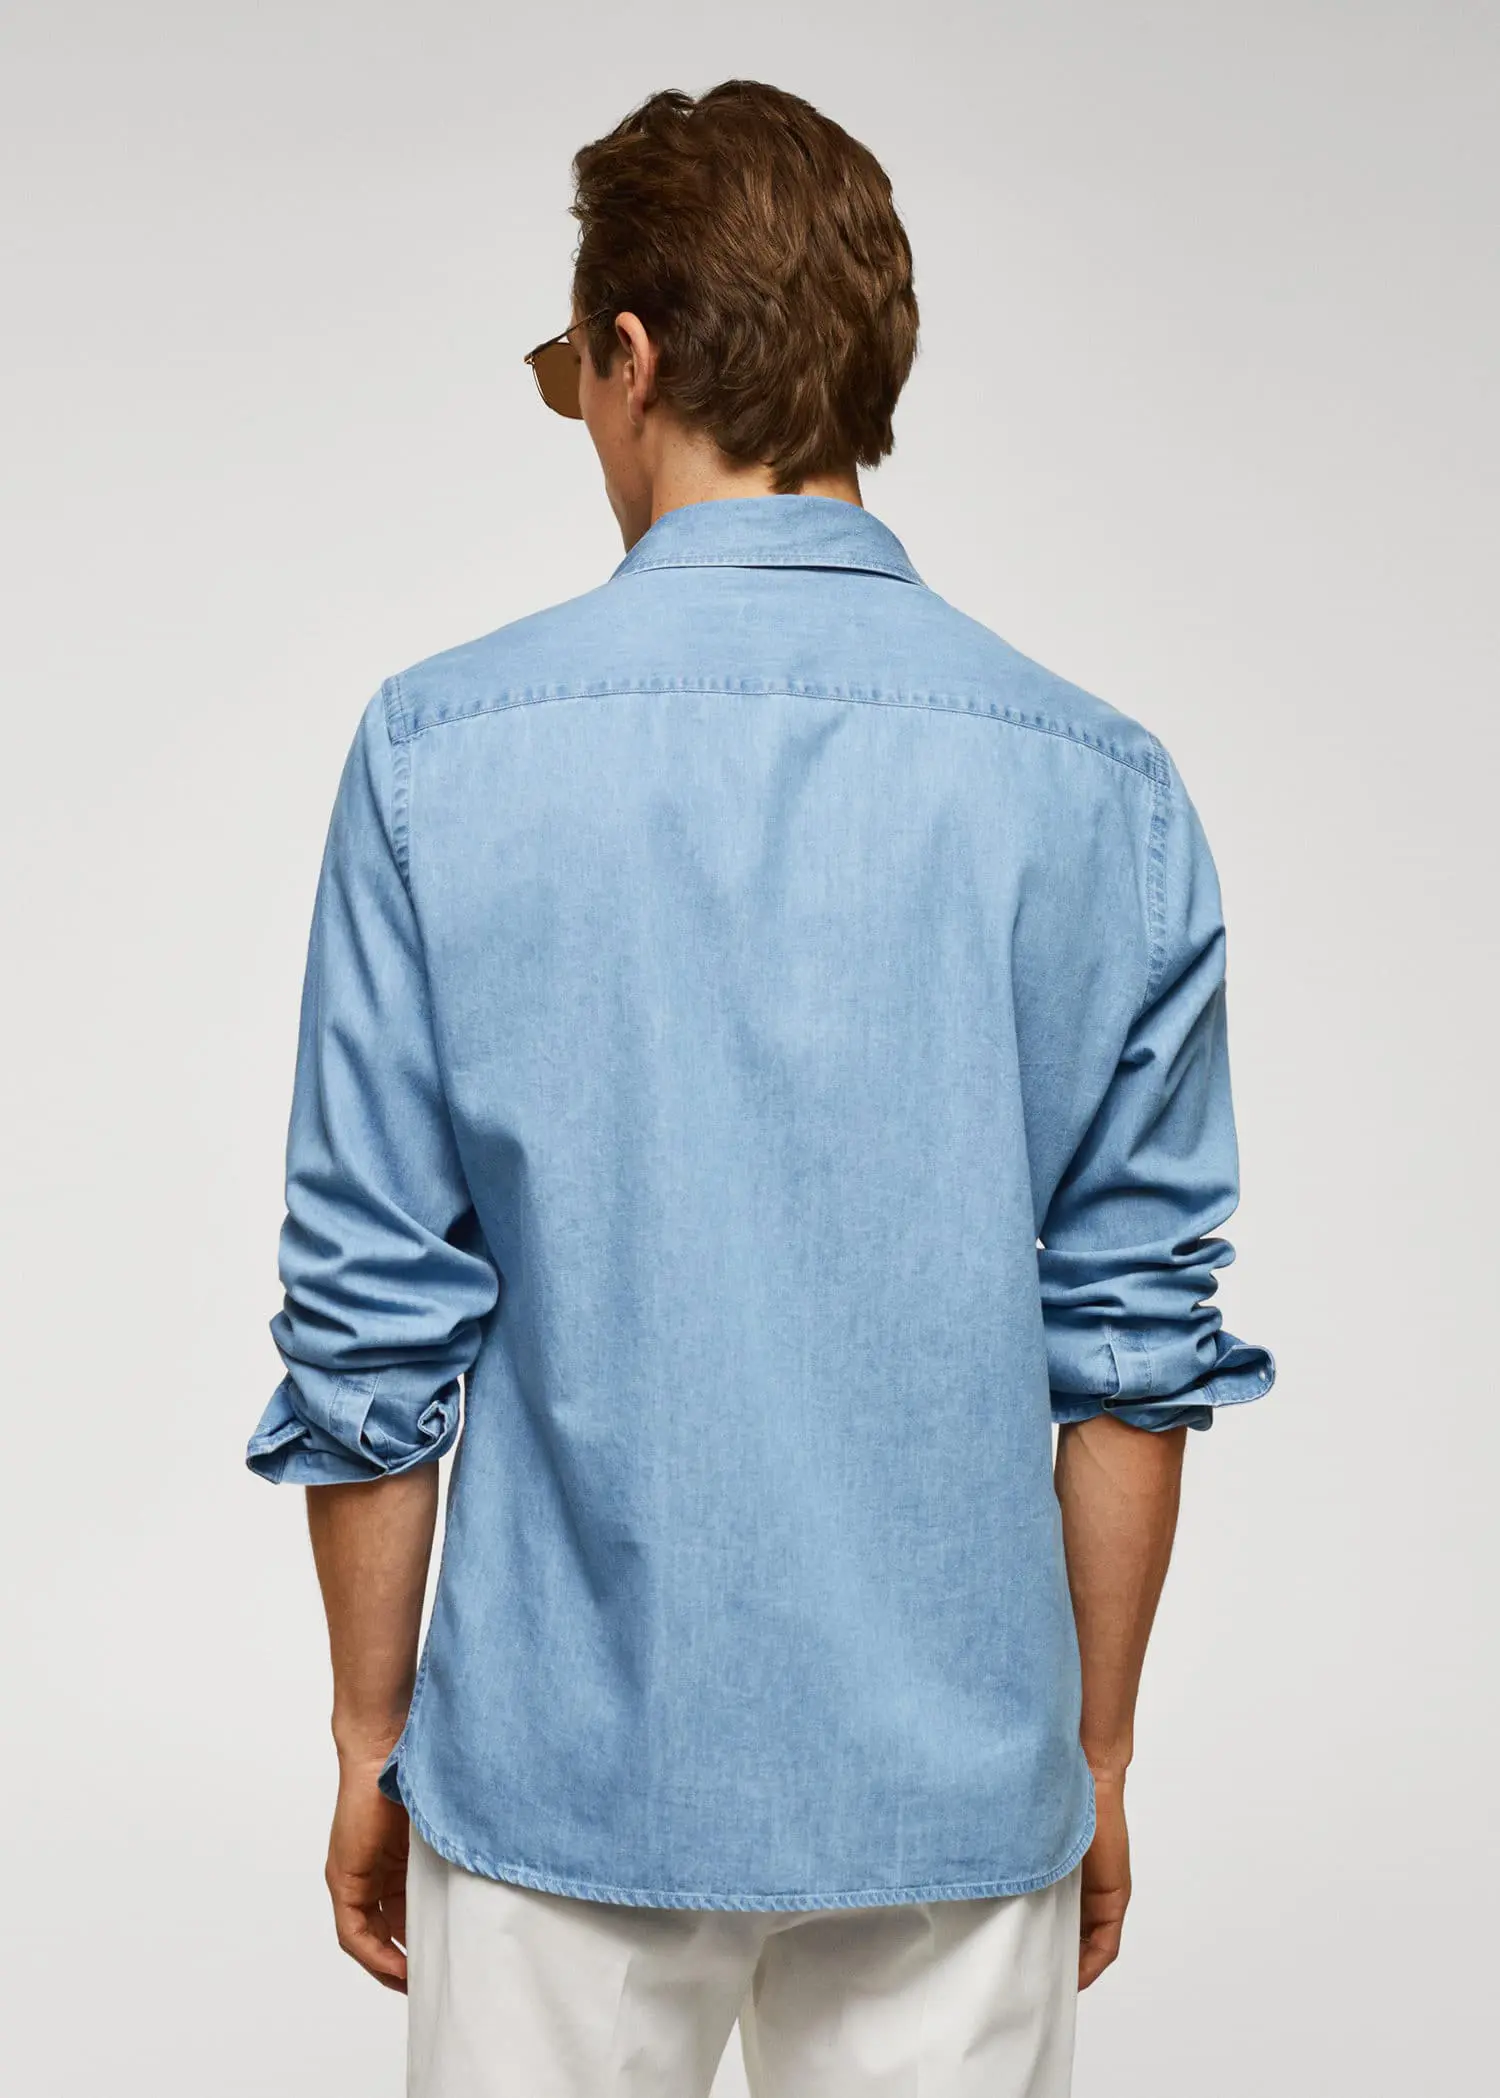 Mango Slim-fit chambray cotton shirt. 3